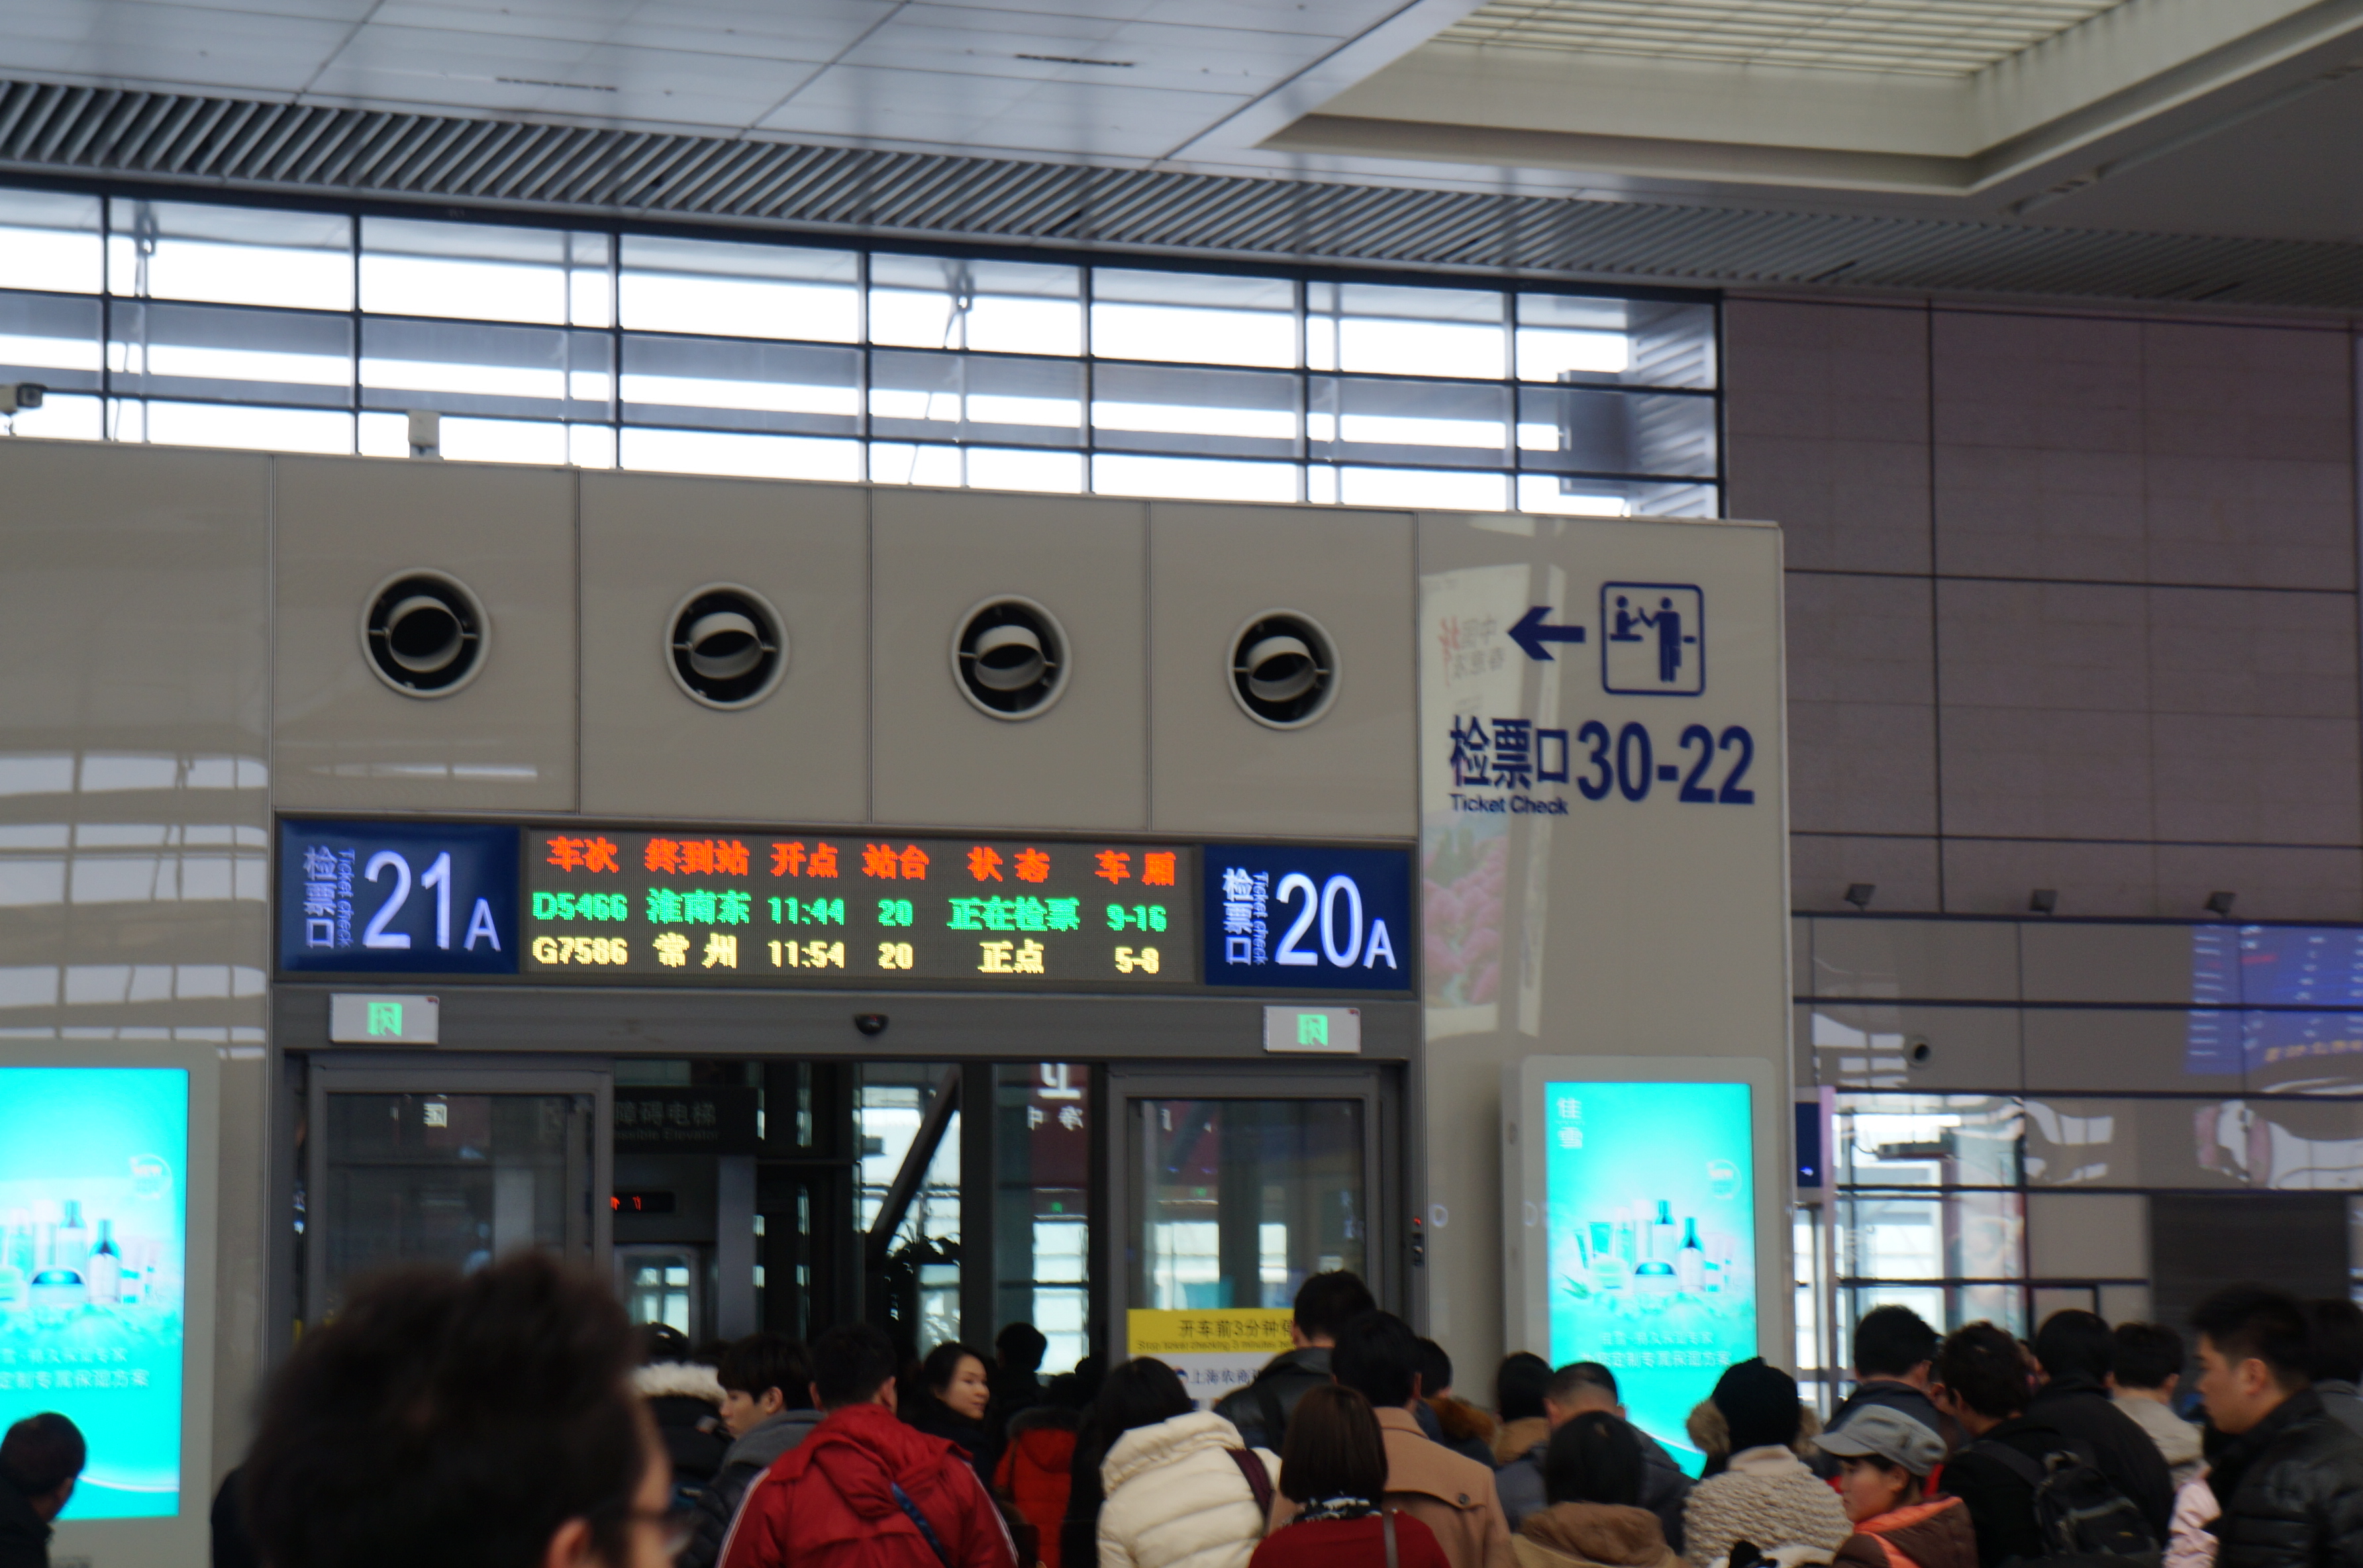 上海虹桥火车站坐几号地铁到达_百度知道